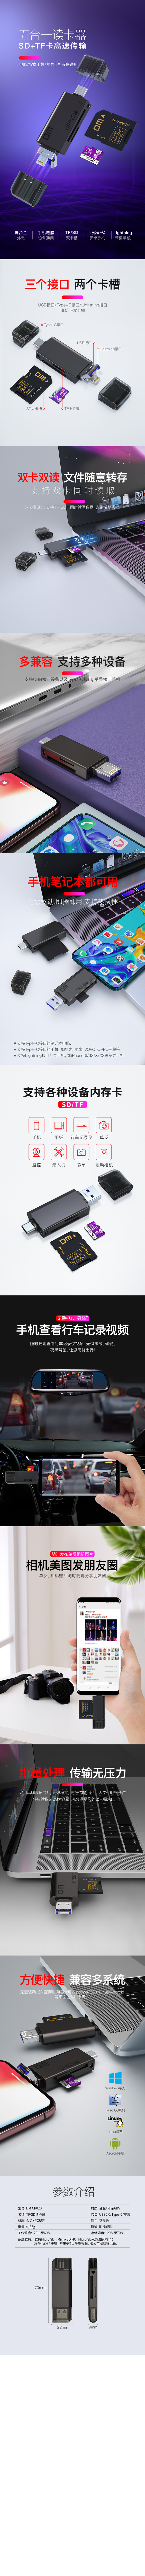 CR023 USB2.0 五合一读卡器